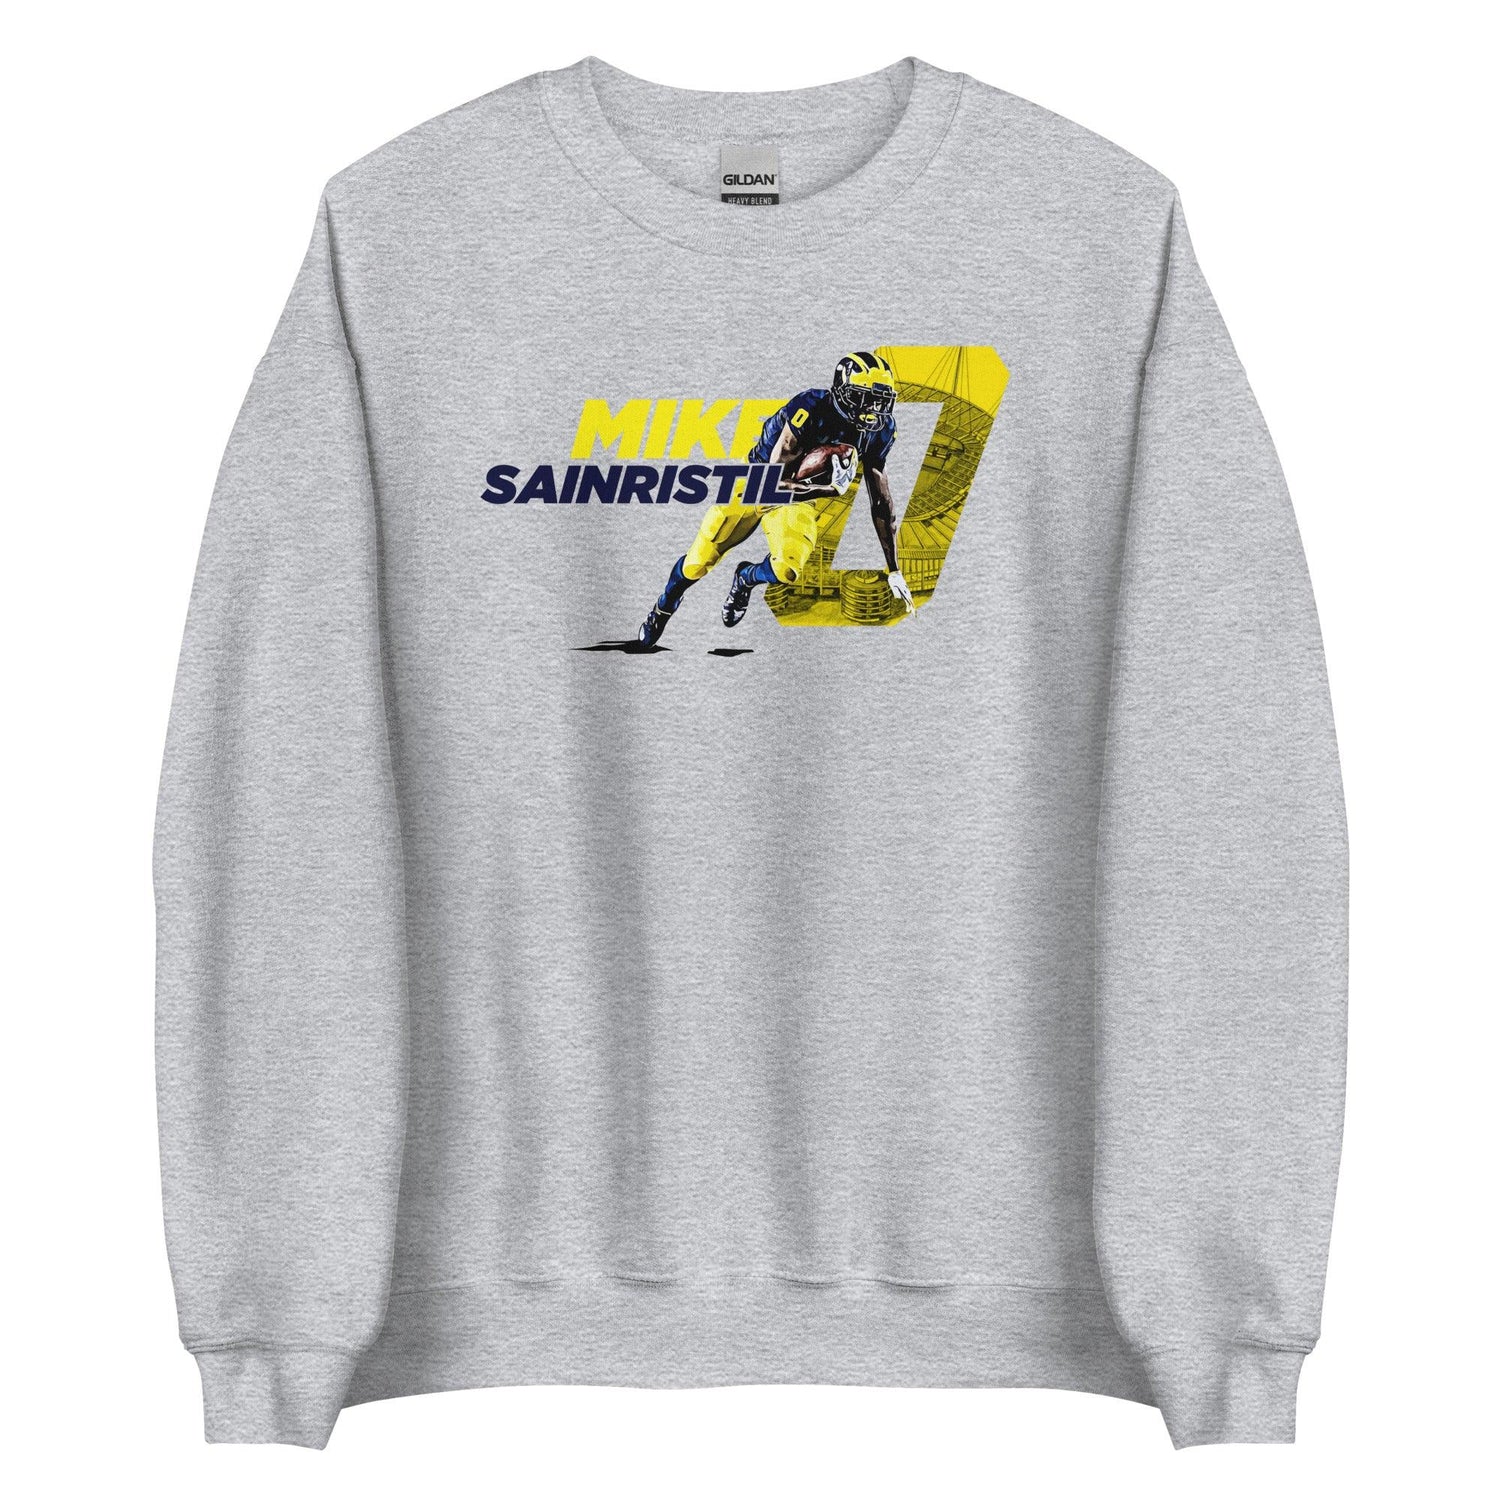 Mike Sainristil "Gameday" Sweatshirt - Fan Arch